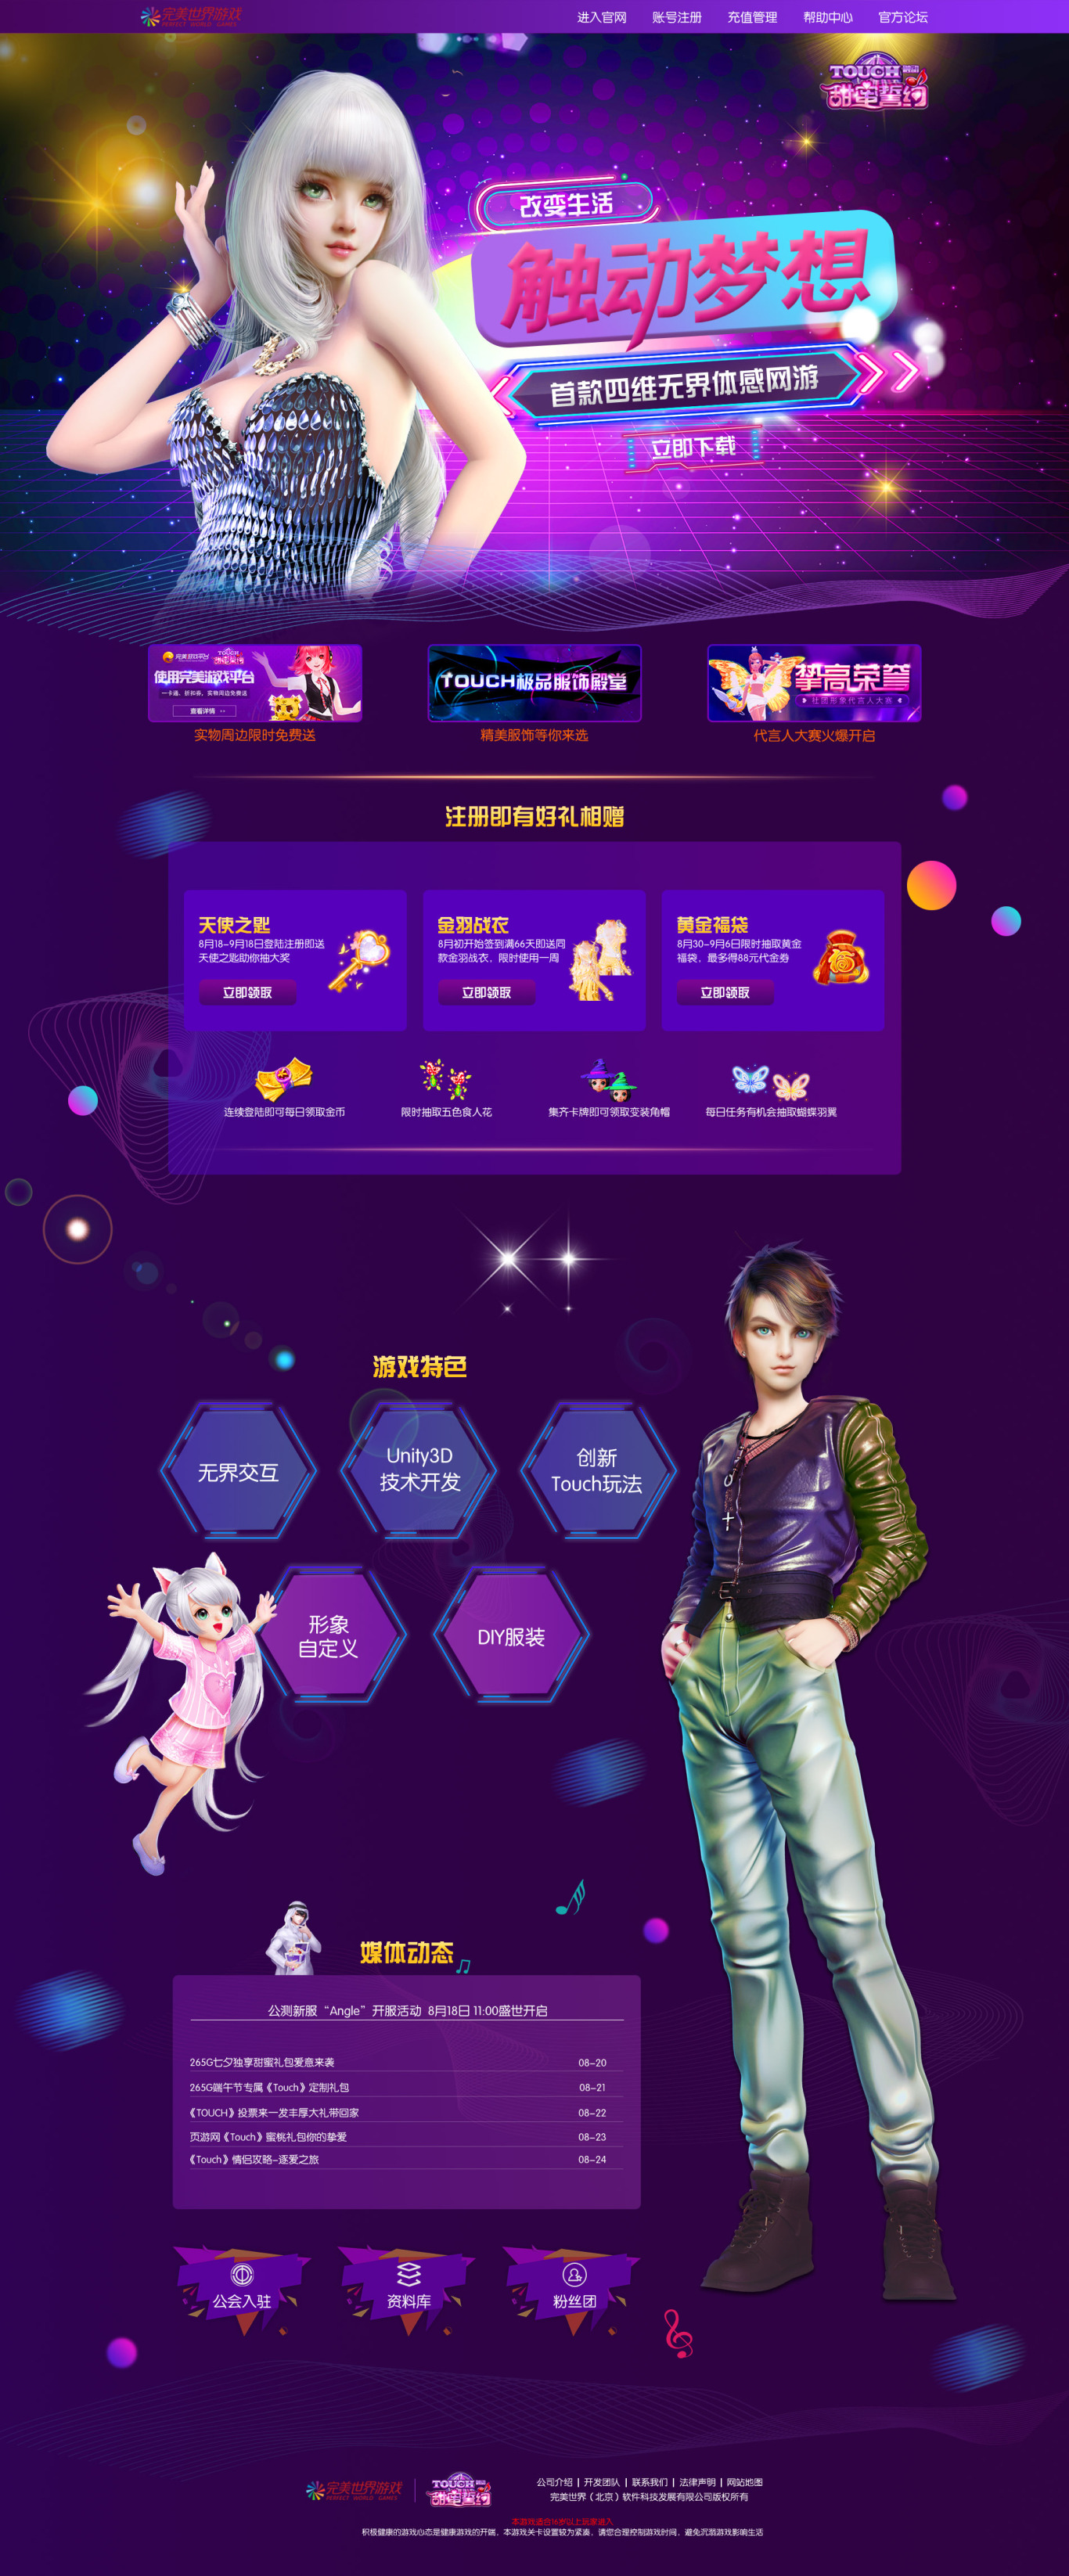 完美世界Touch炫舞游戏官网专题页面设计图0